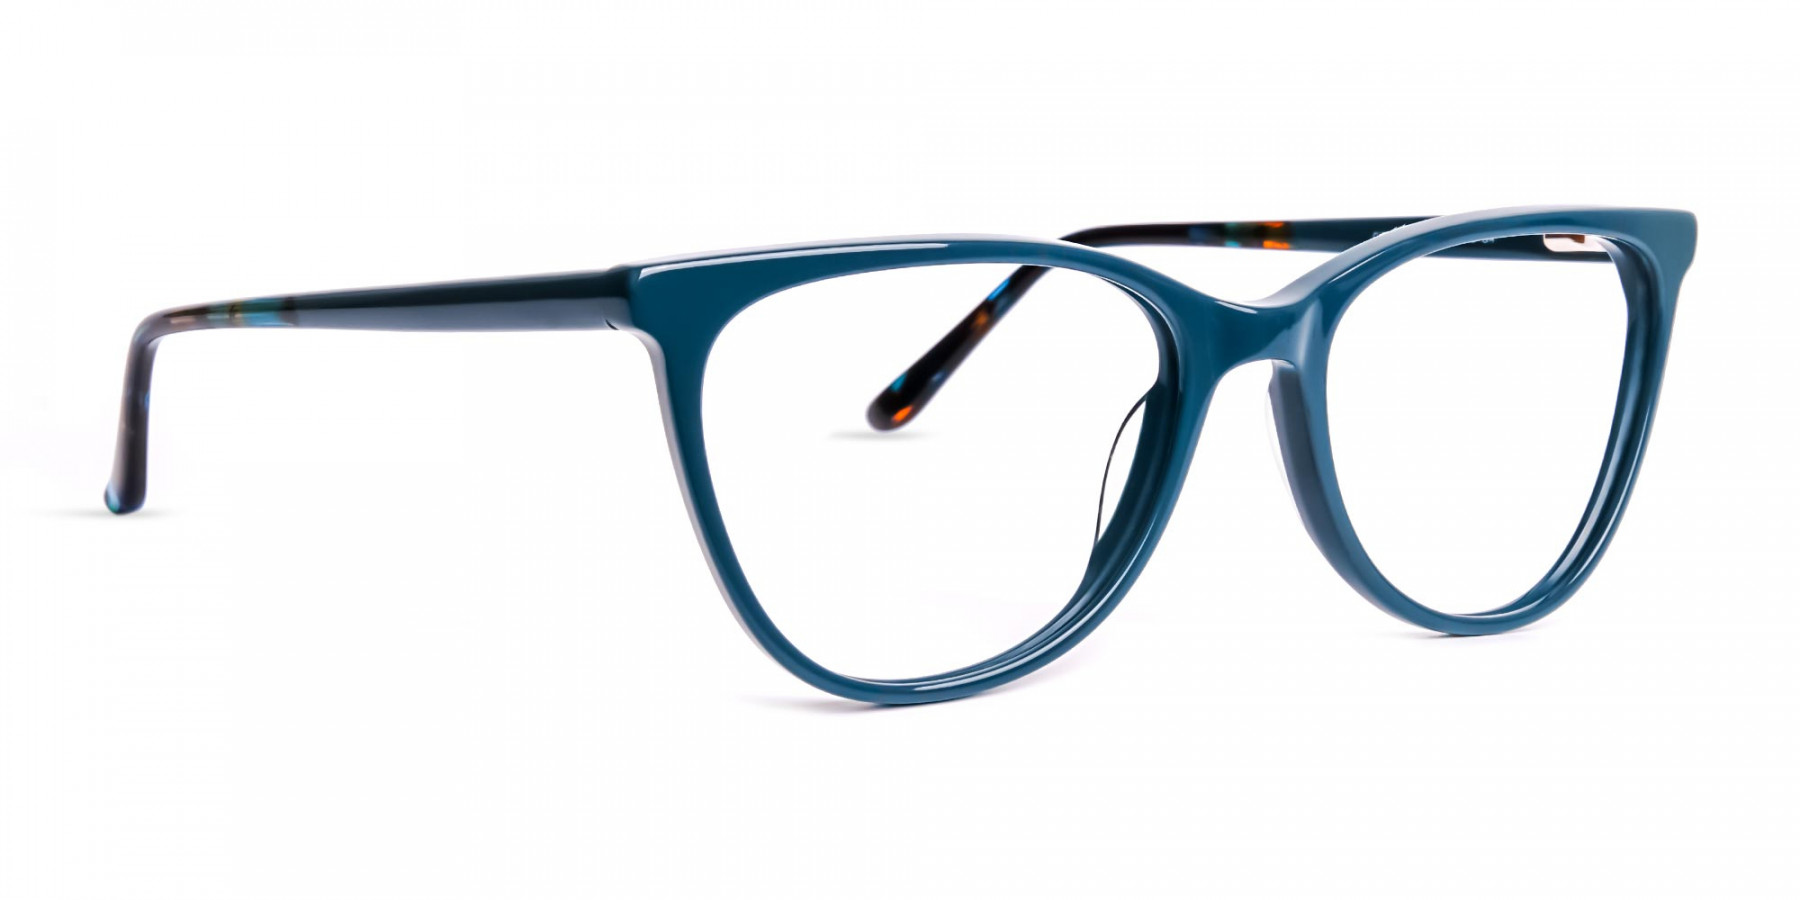 designer-teal-green-glasses-frames-1